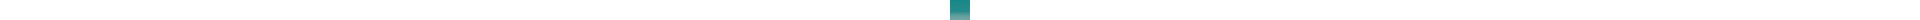 Crayon de couleur DERWENT Inktense DERWENT Inktense:1220-vert aquamarine